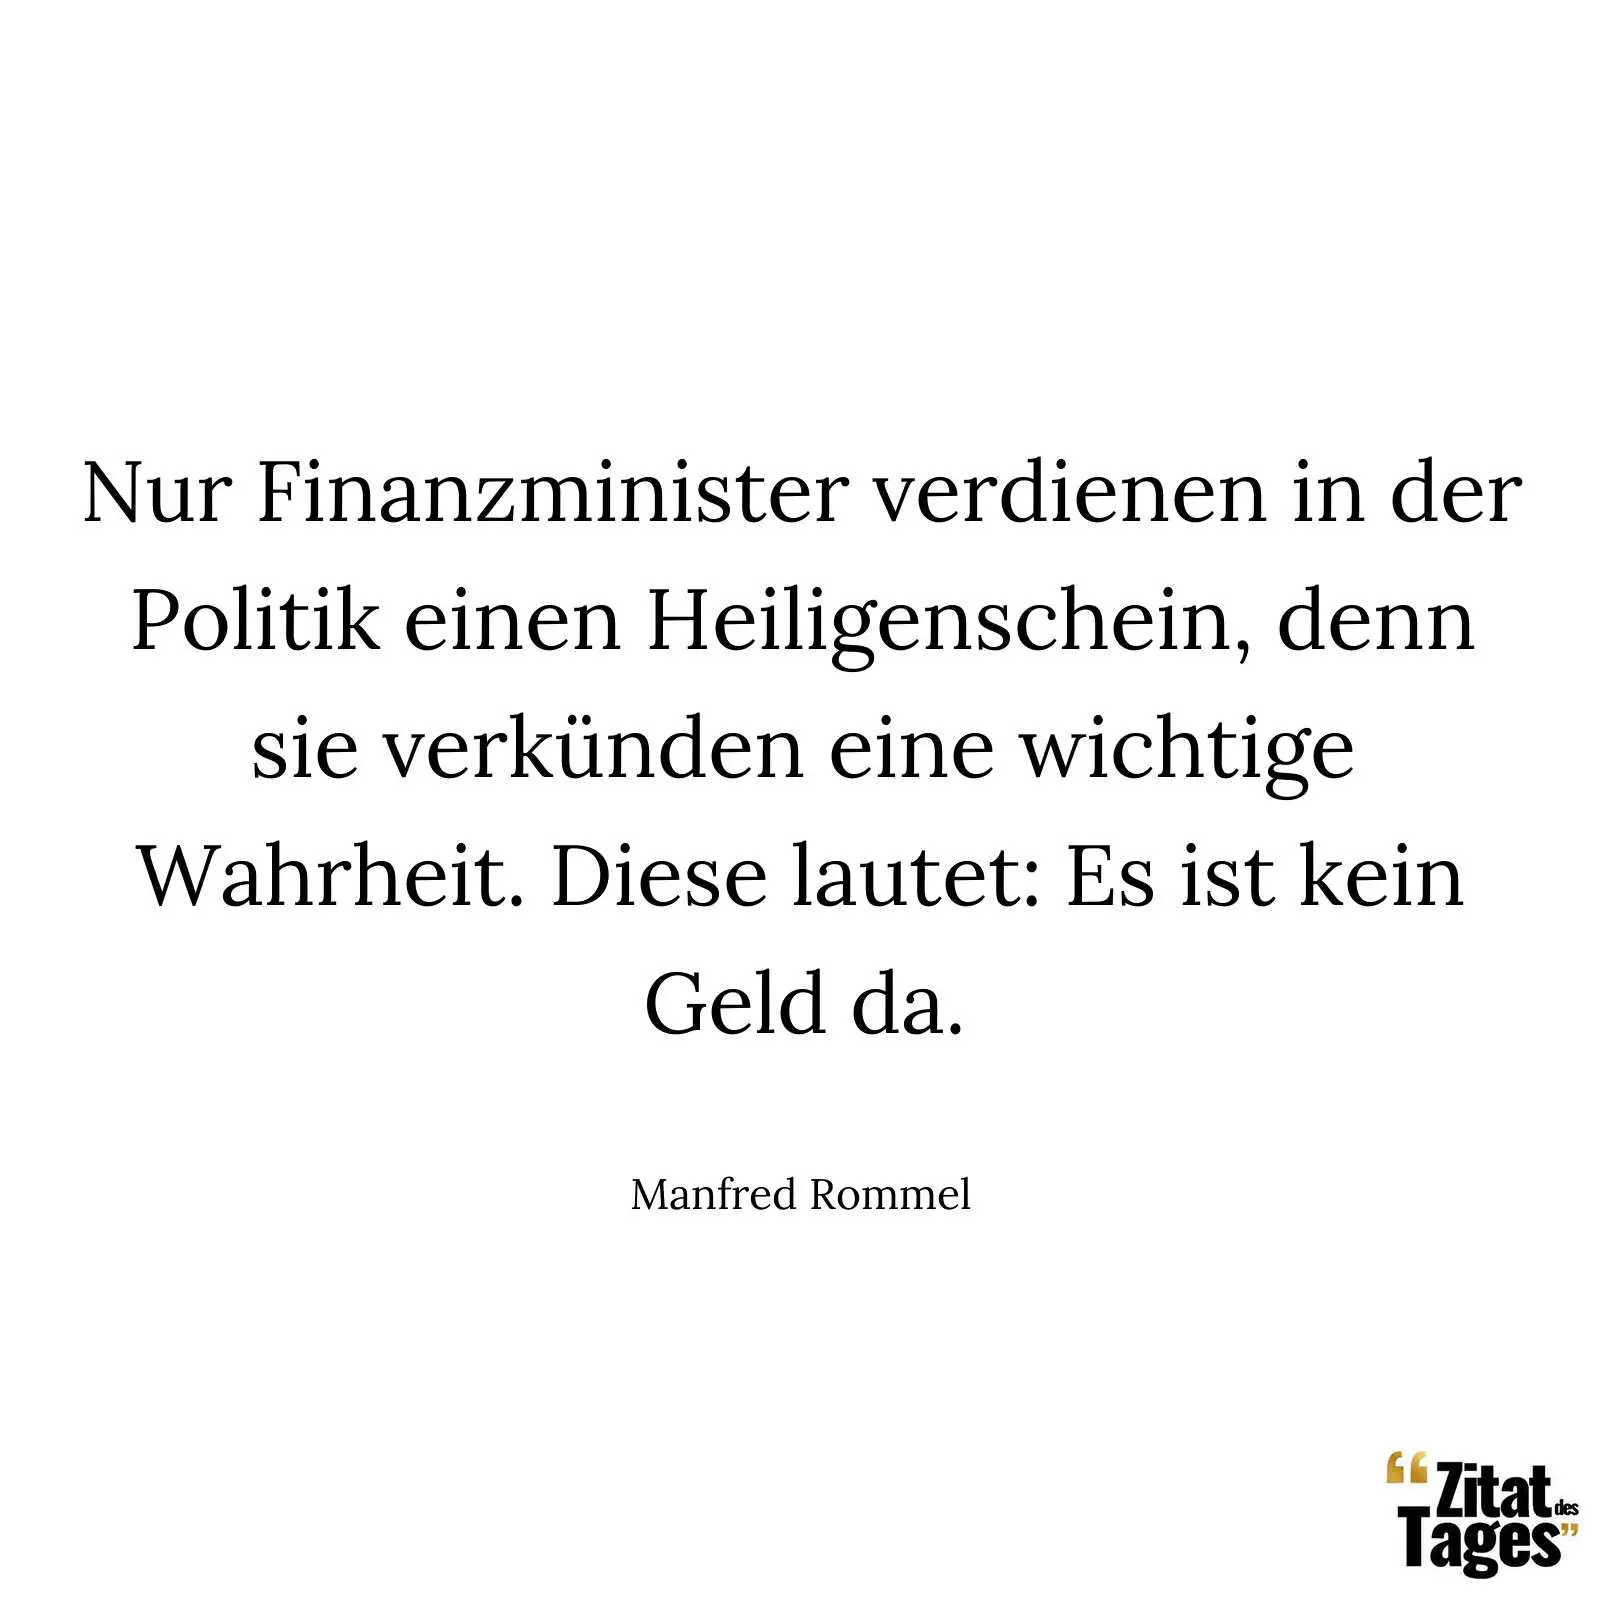 Nur Finanzminister verdienen in der Politik einen Heiligenschein, denn sie verkünden eine wichtige Wahrheit. Diese lautet: Es ist kein Geld da. - Manfred Rommel